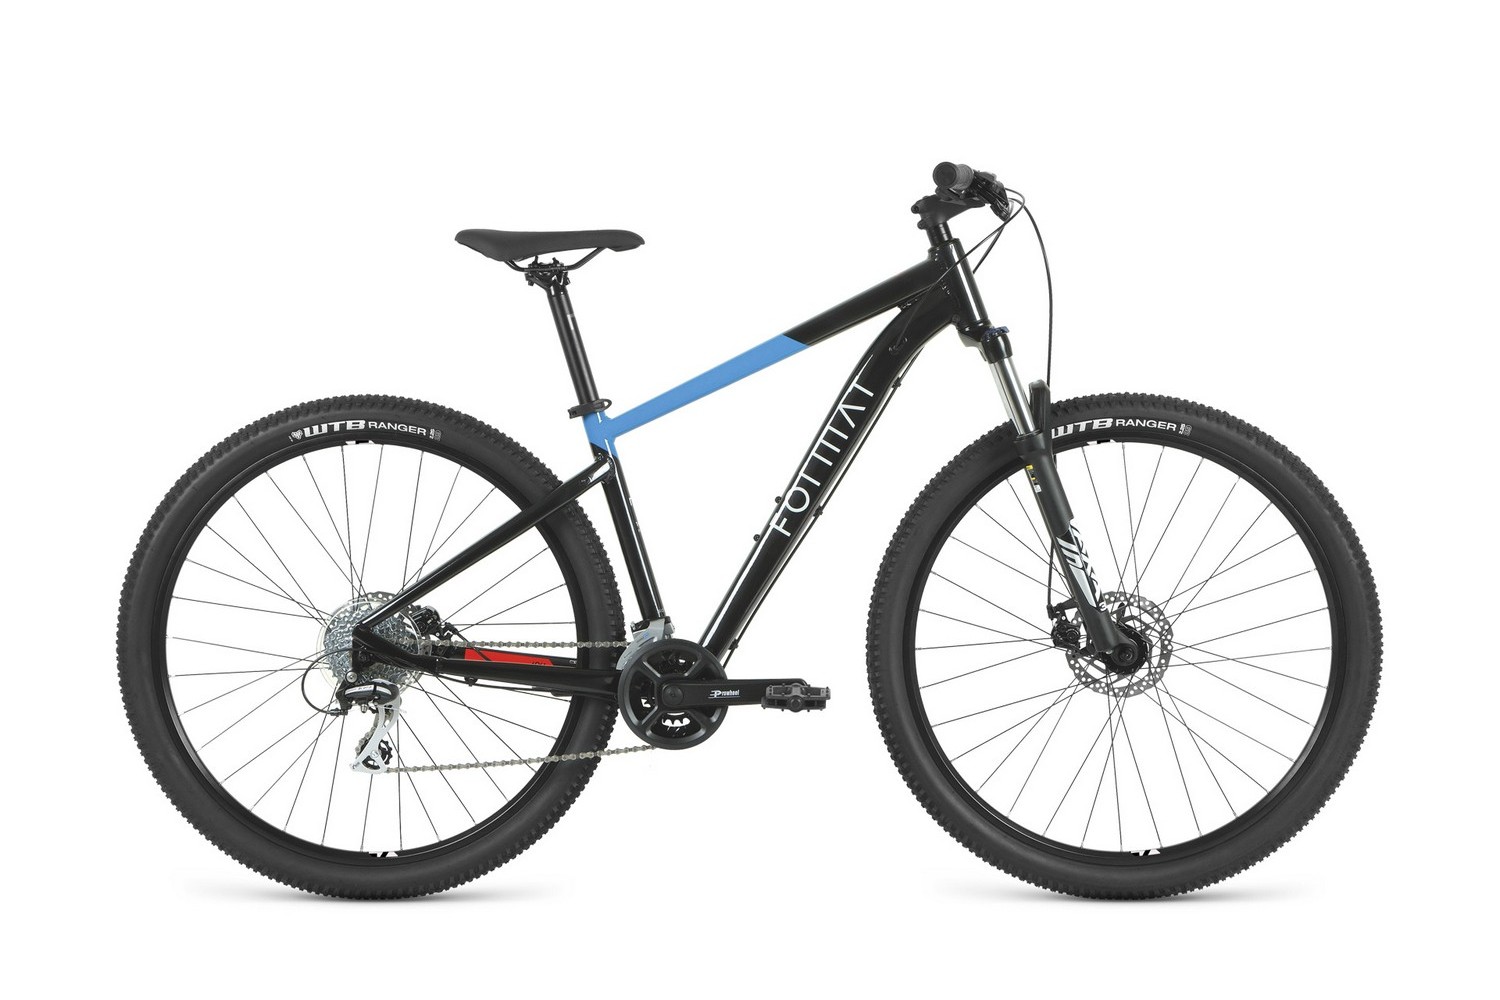 Горный велосипед Format 1414 29, год 2023, цвет Черный-Синий, ростовка 19